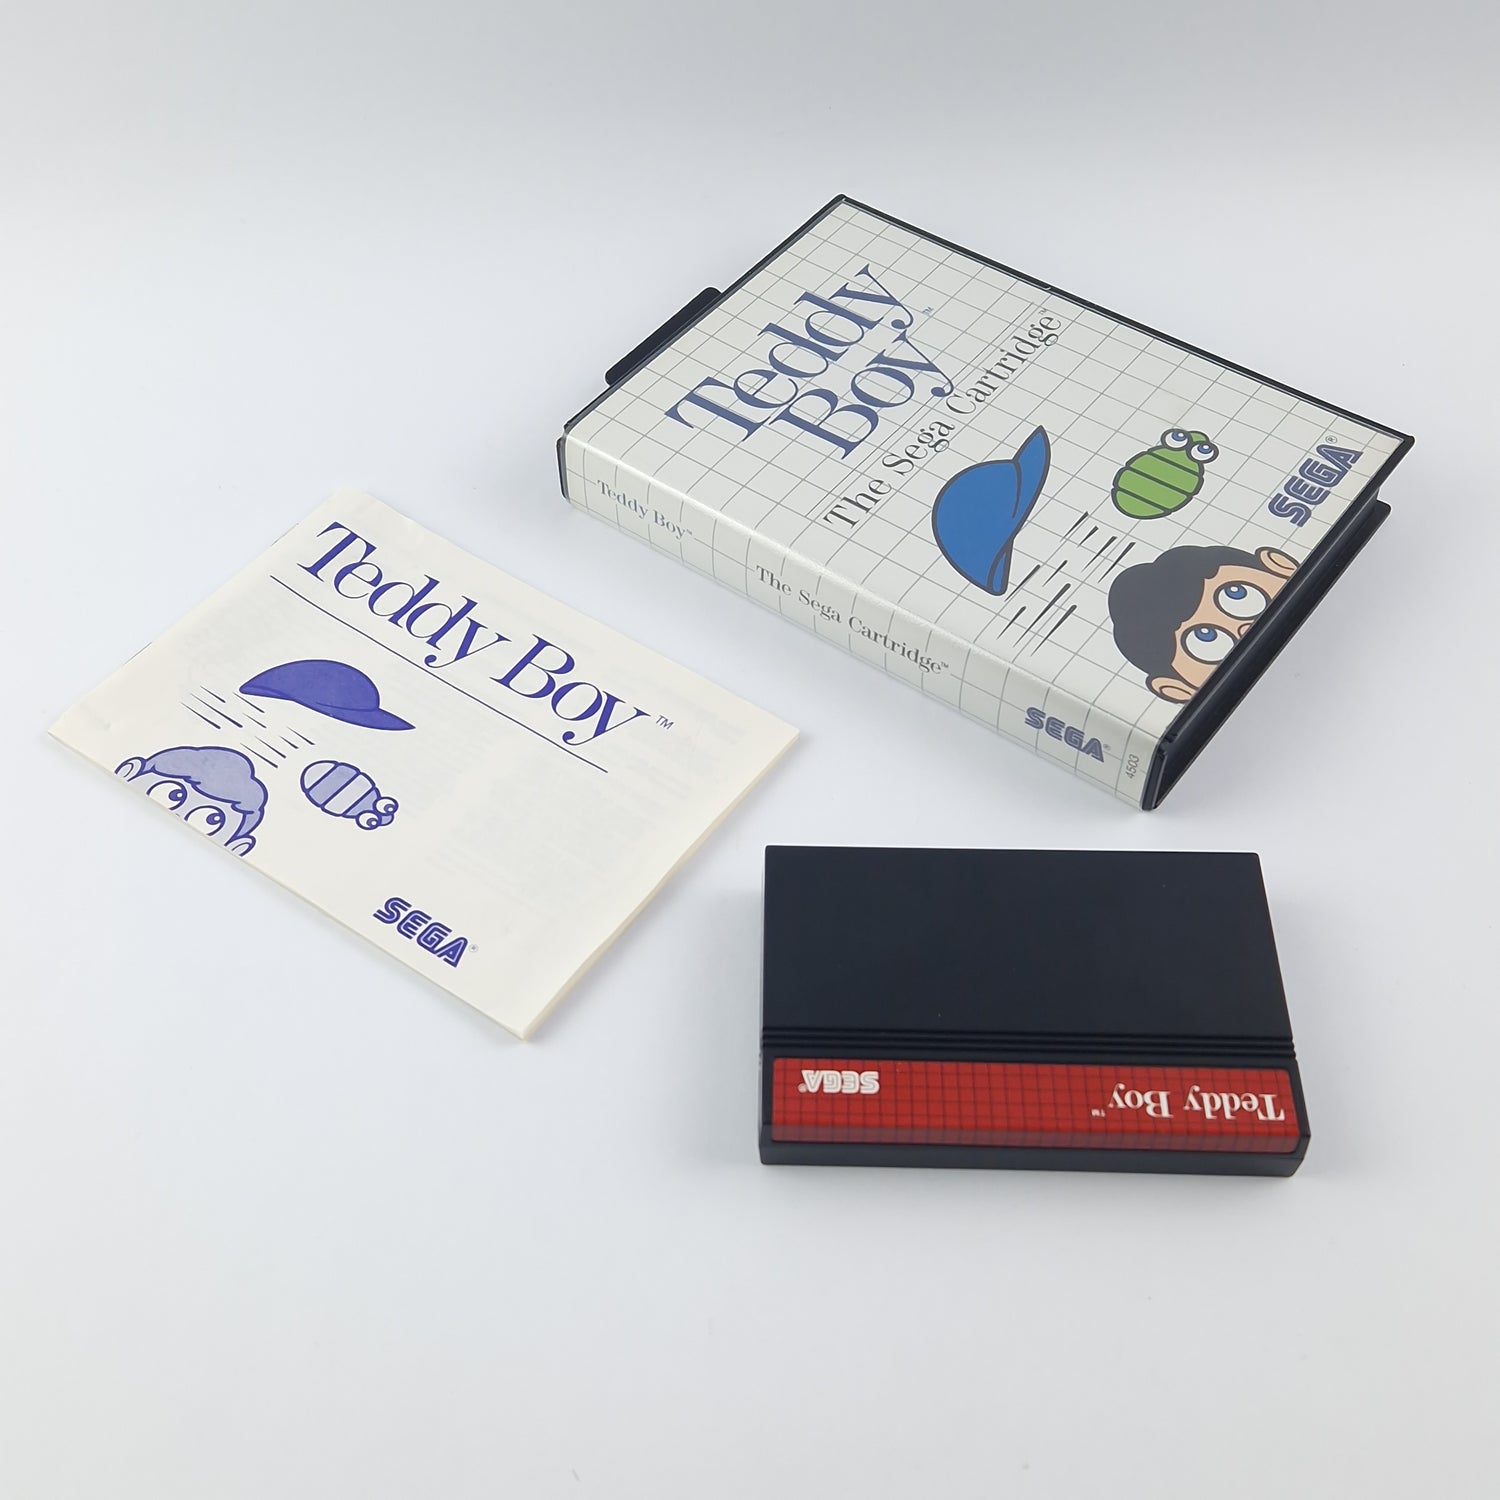 Sega Master System Spiel : Teddy Boy - OVP Anleitung Cartridge PAL - Sehr Gut